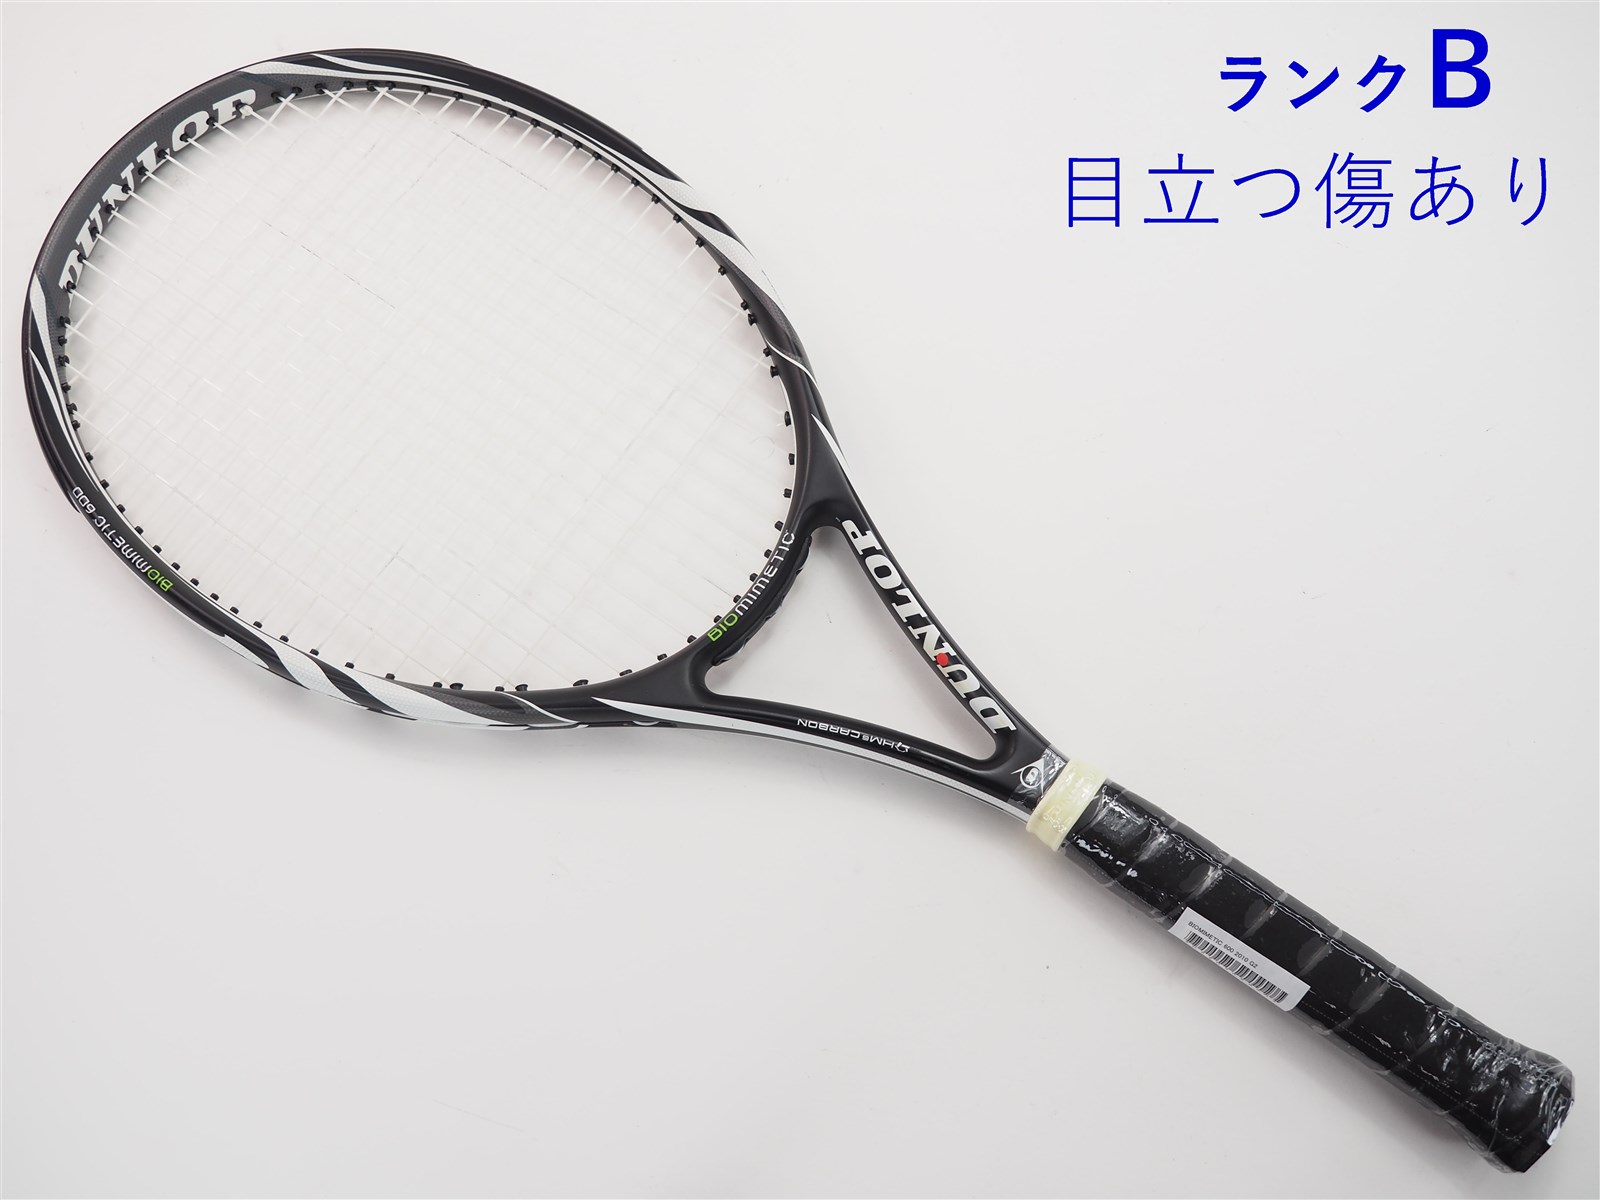 テニスラケット ダンロップ バイオミメティック 600 2010年モデル (G2)DUNLOP BIOMIMETIC 600 2010